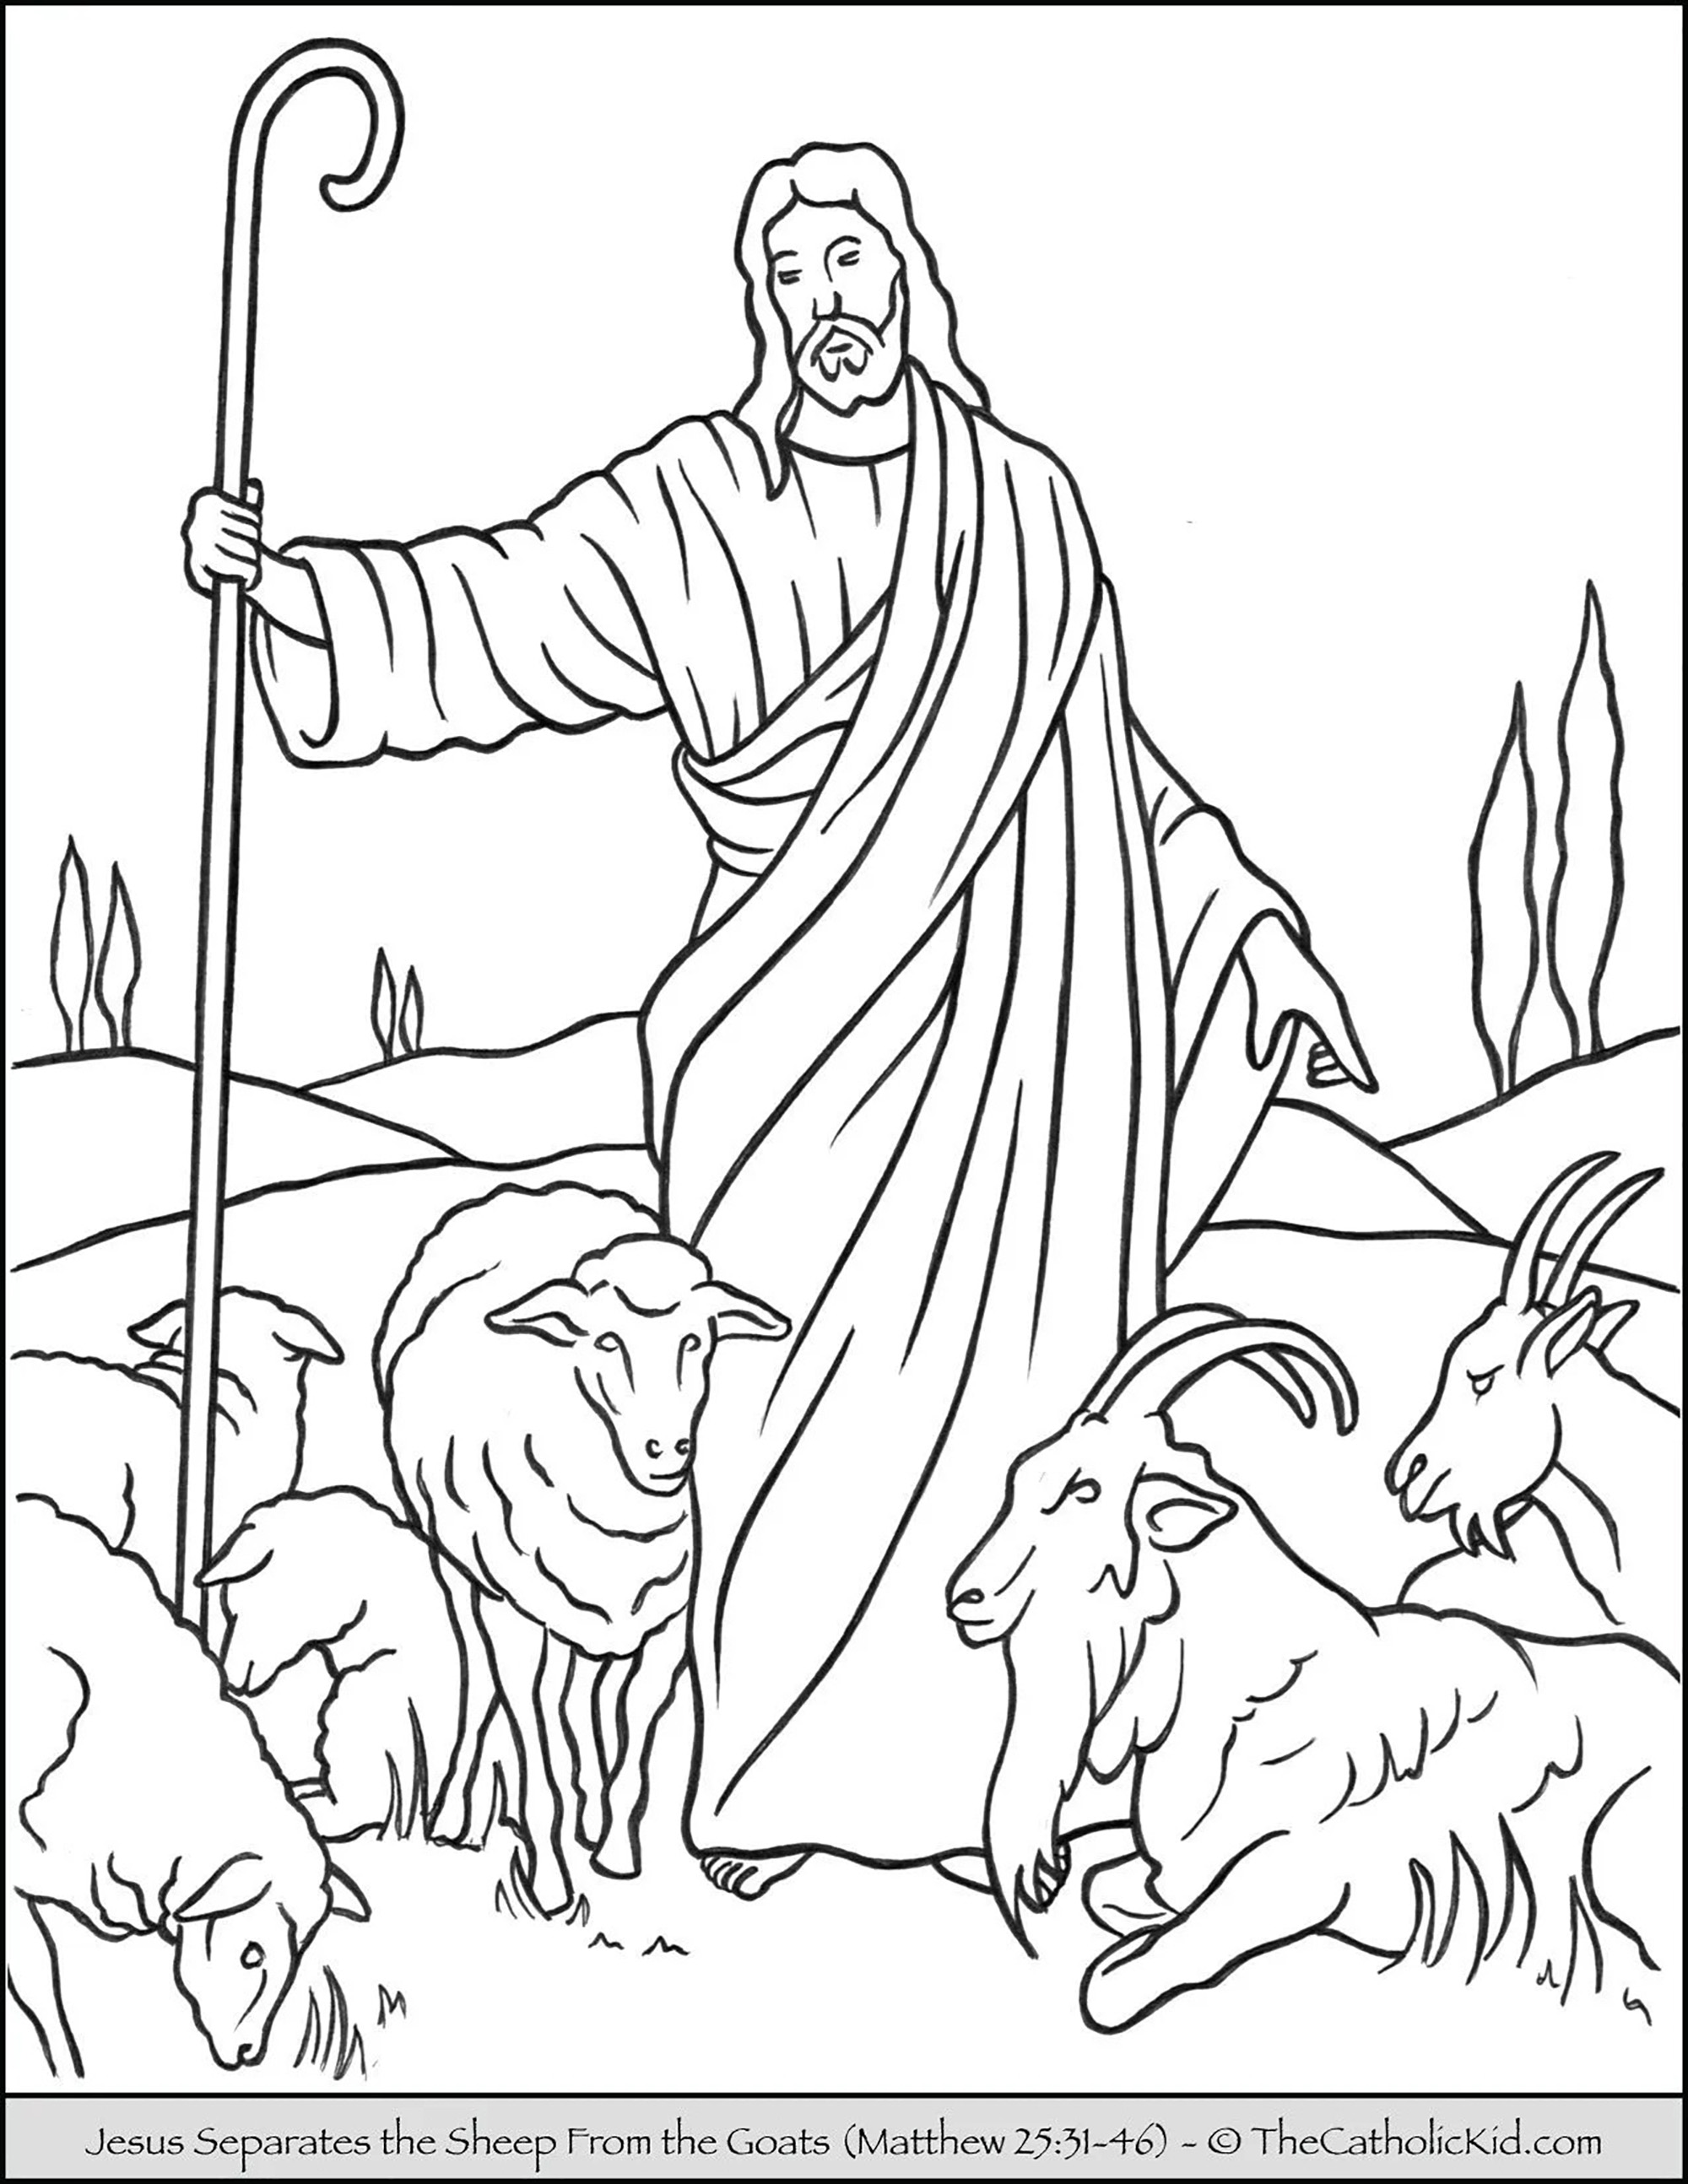 Jesus séparant les moutons des chevres. Cette parabole concerne le temps du jugement. Les moutons sont le symbole de ceux qui suivent et obéissent au Christ, tandis que les chèvres représentent ceux qui ont choisi de ne pas suivre Jésus et son exemple sur terre (un témoin).